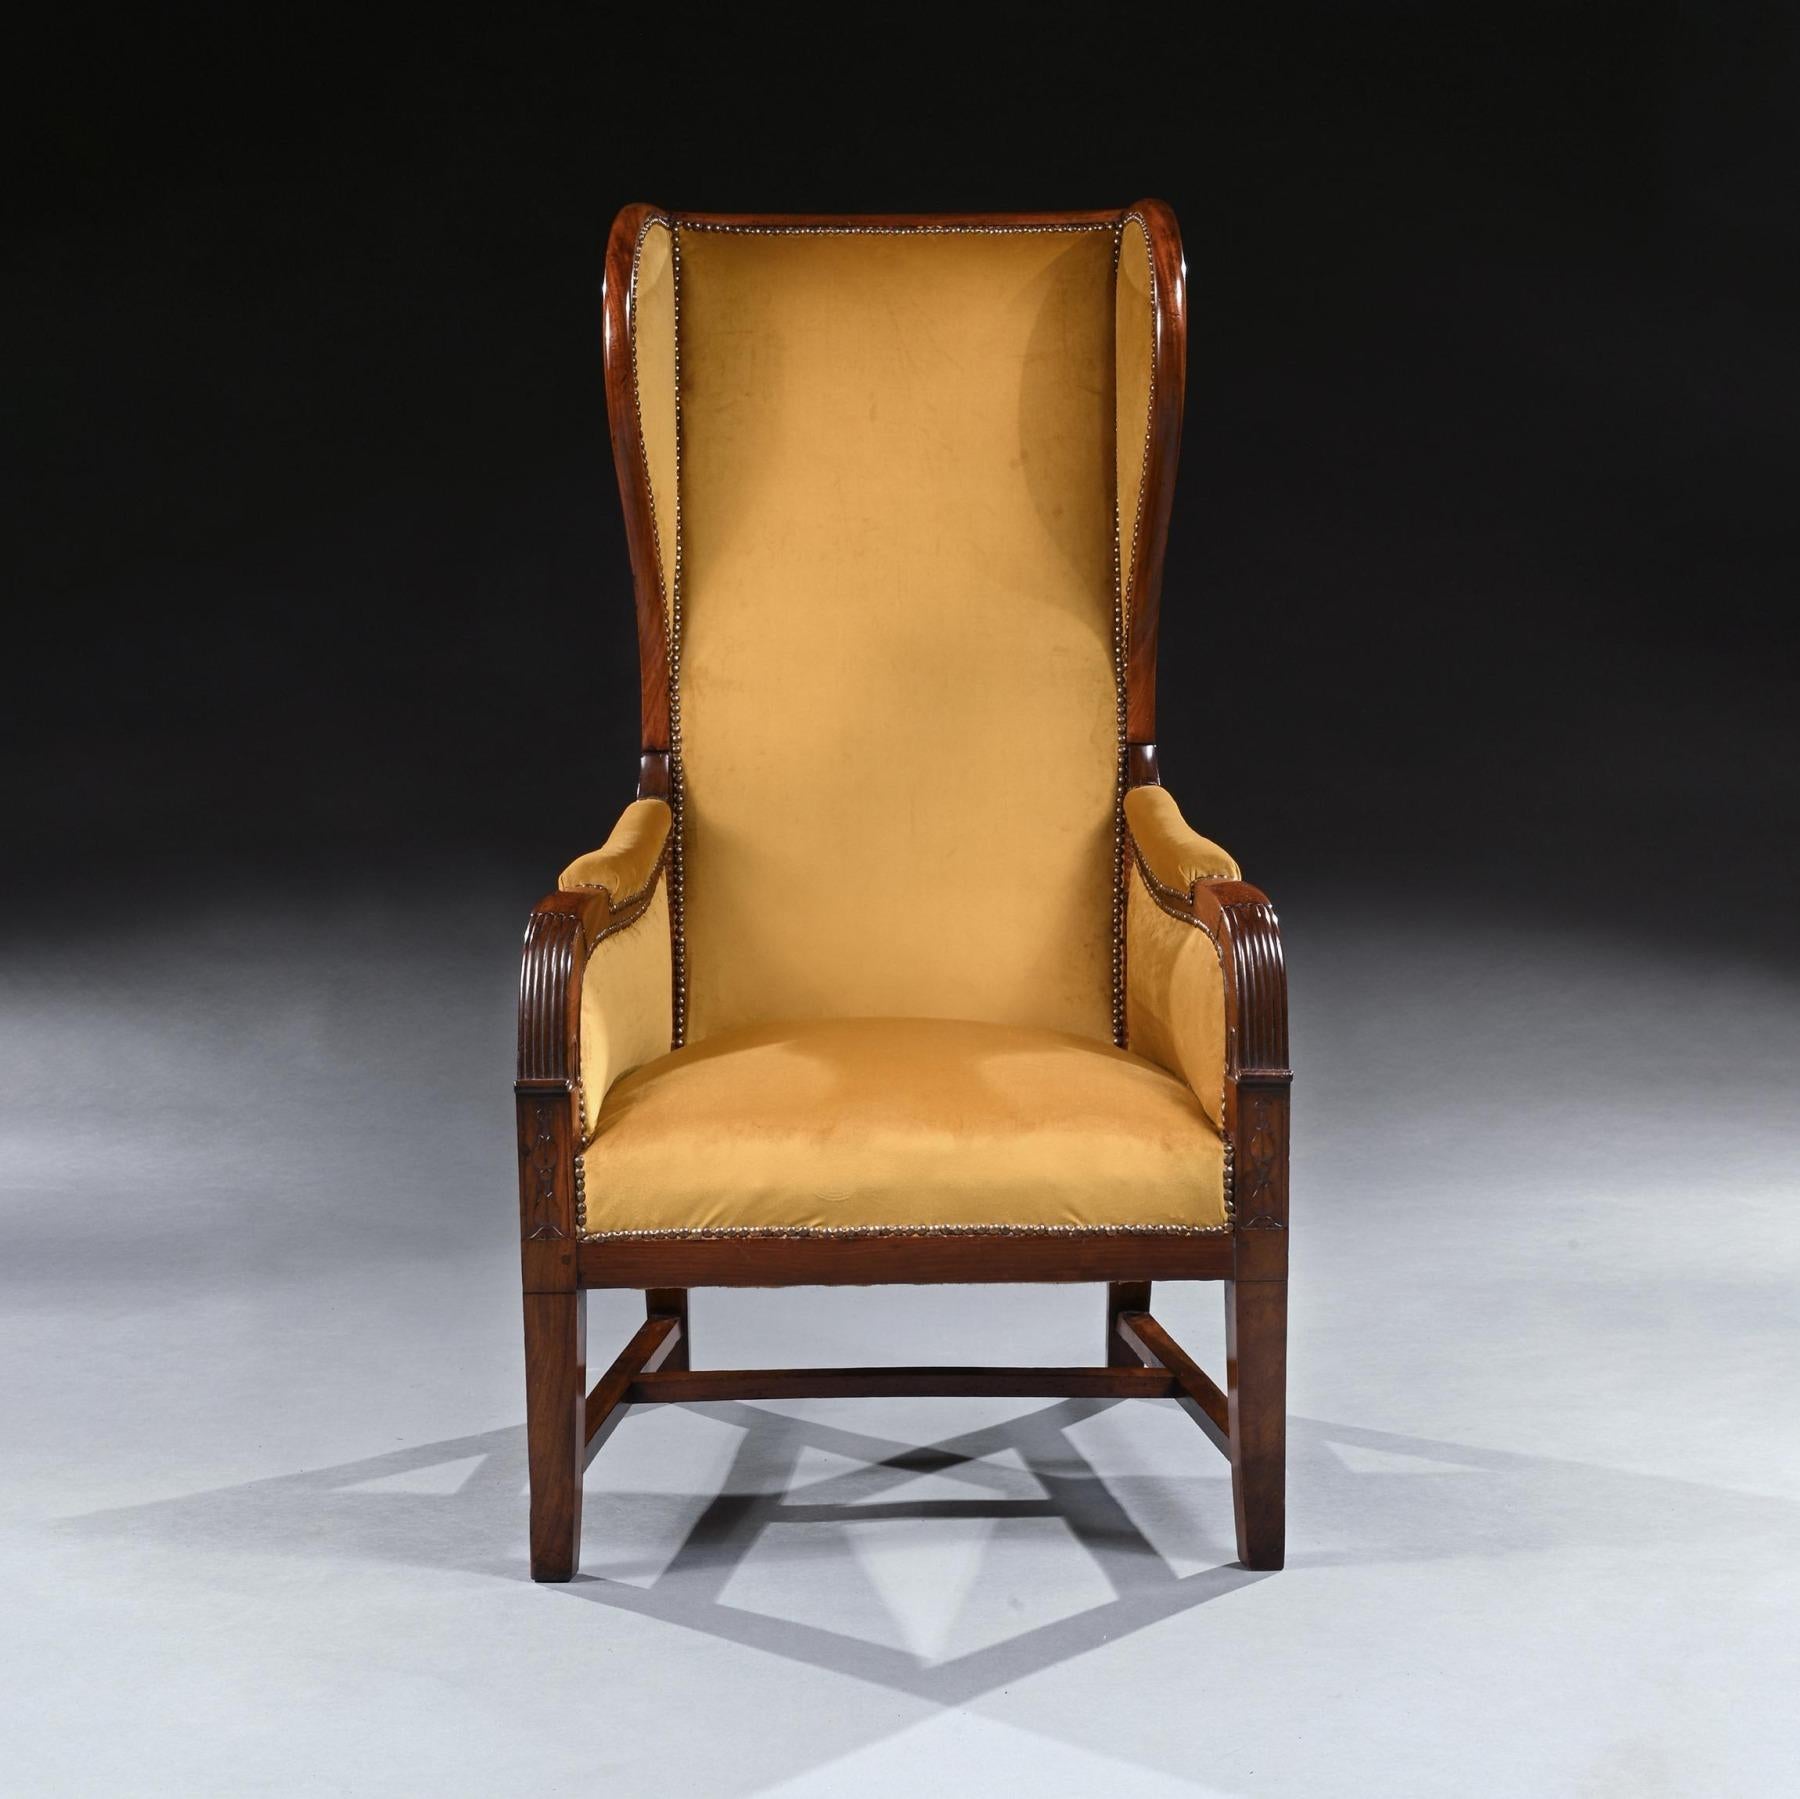 Un inhabituel fauteuil à dossier latéral inclinable en acajou de style Empire français de hautes proportions.

Français, Circa 1820.

De proportions élégantes, avec un dossier incliné exceptionnellement haut en acajou. L'assise est rembourrée et les